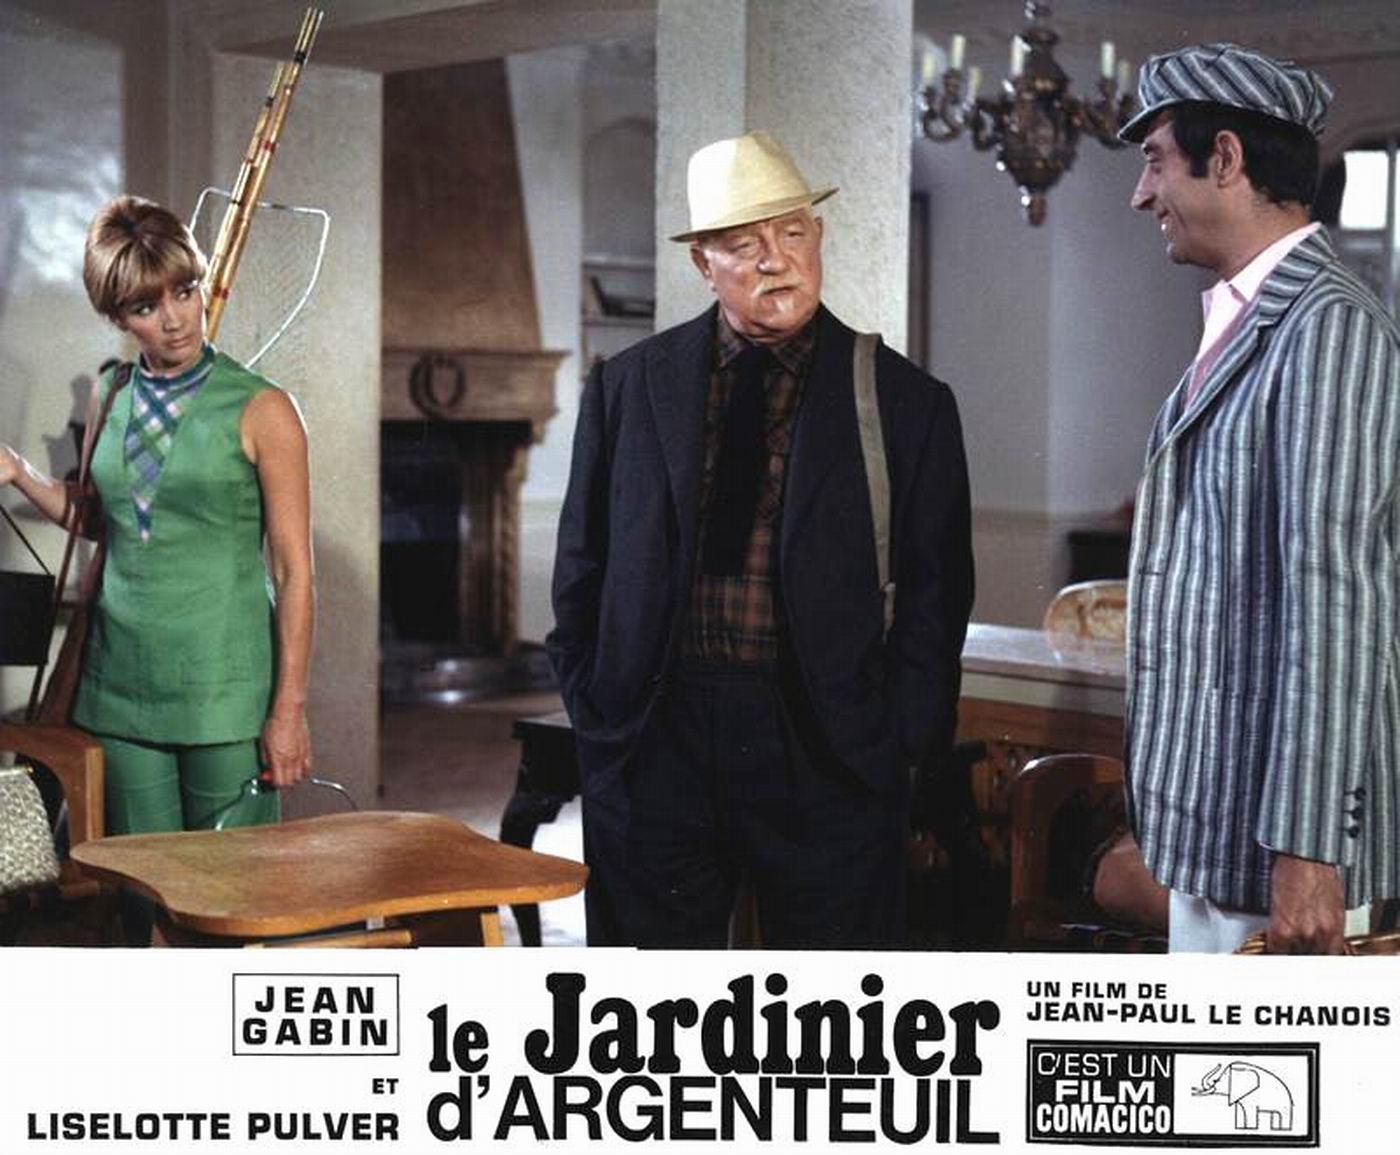 Le jardinier d'Argenteuil (1966) Jean-Paul Le Chanois - Le jardinier d'Argenteuil